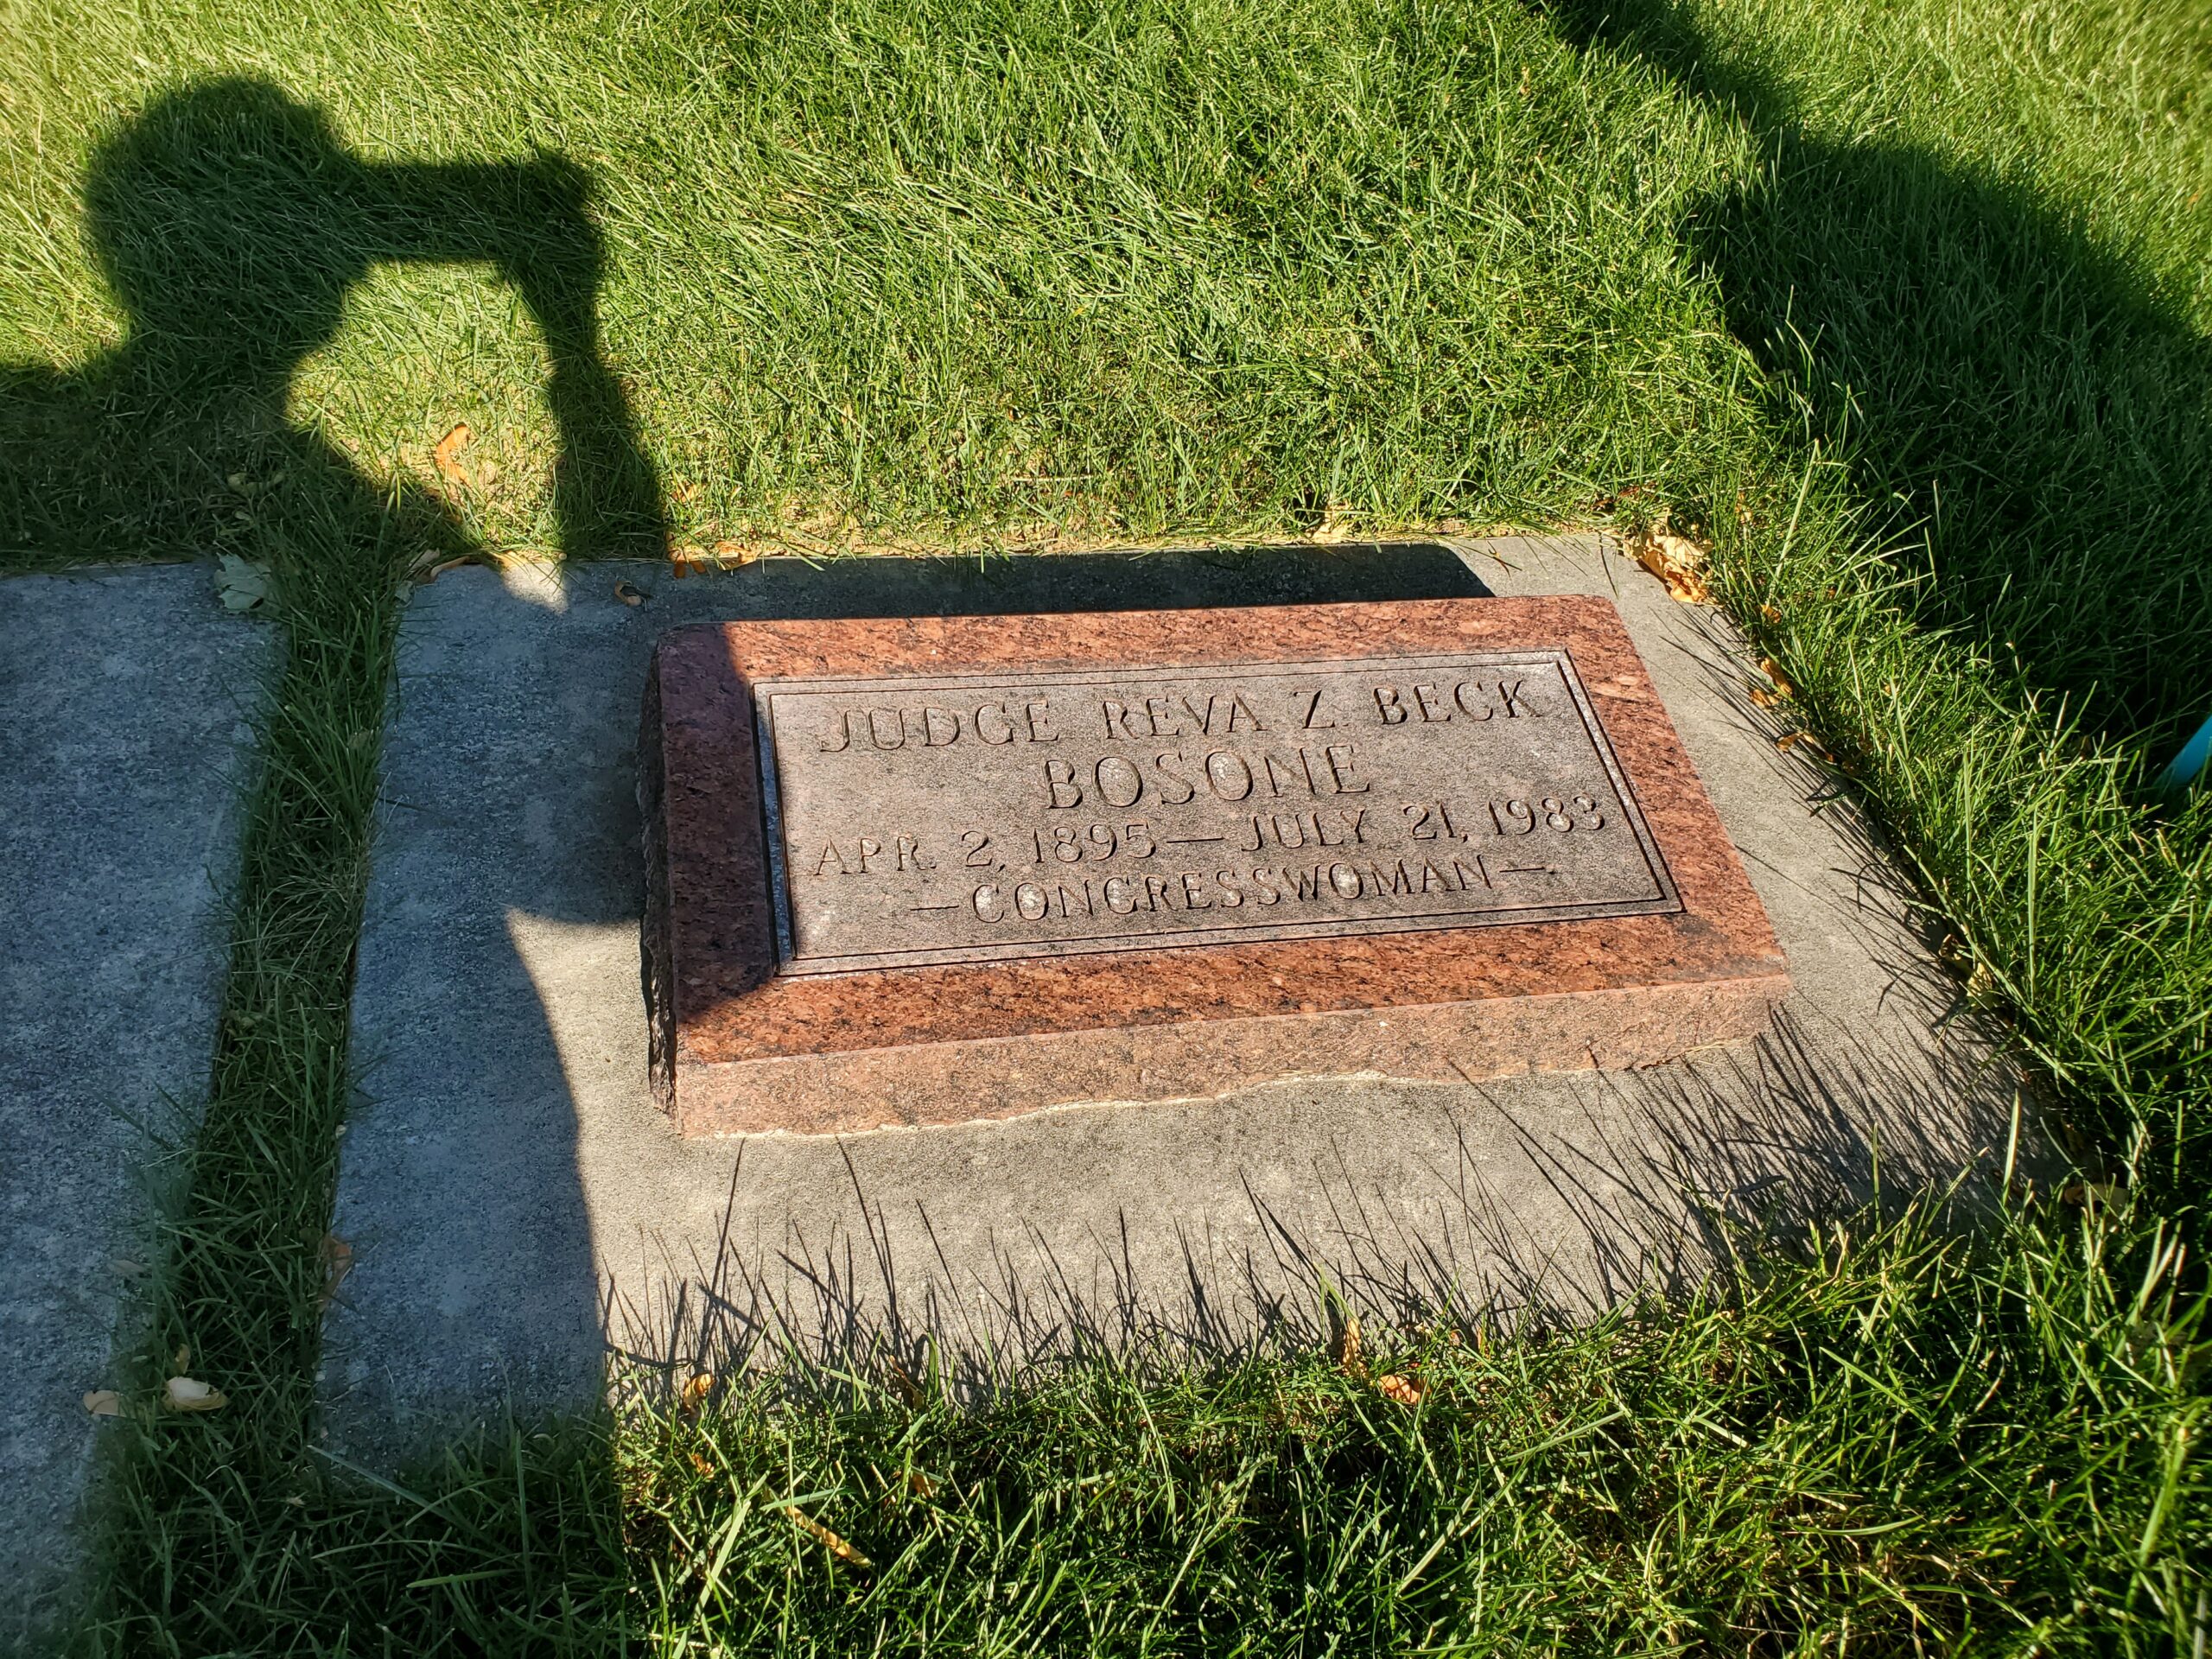 Reva Beck Bosone Grave